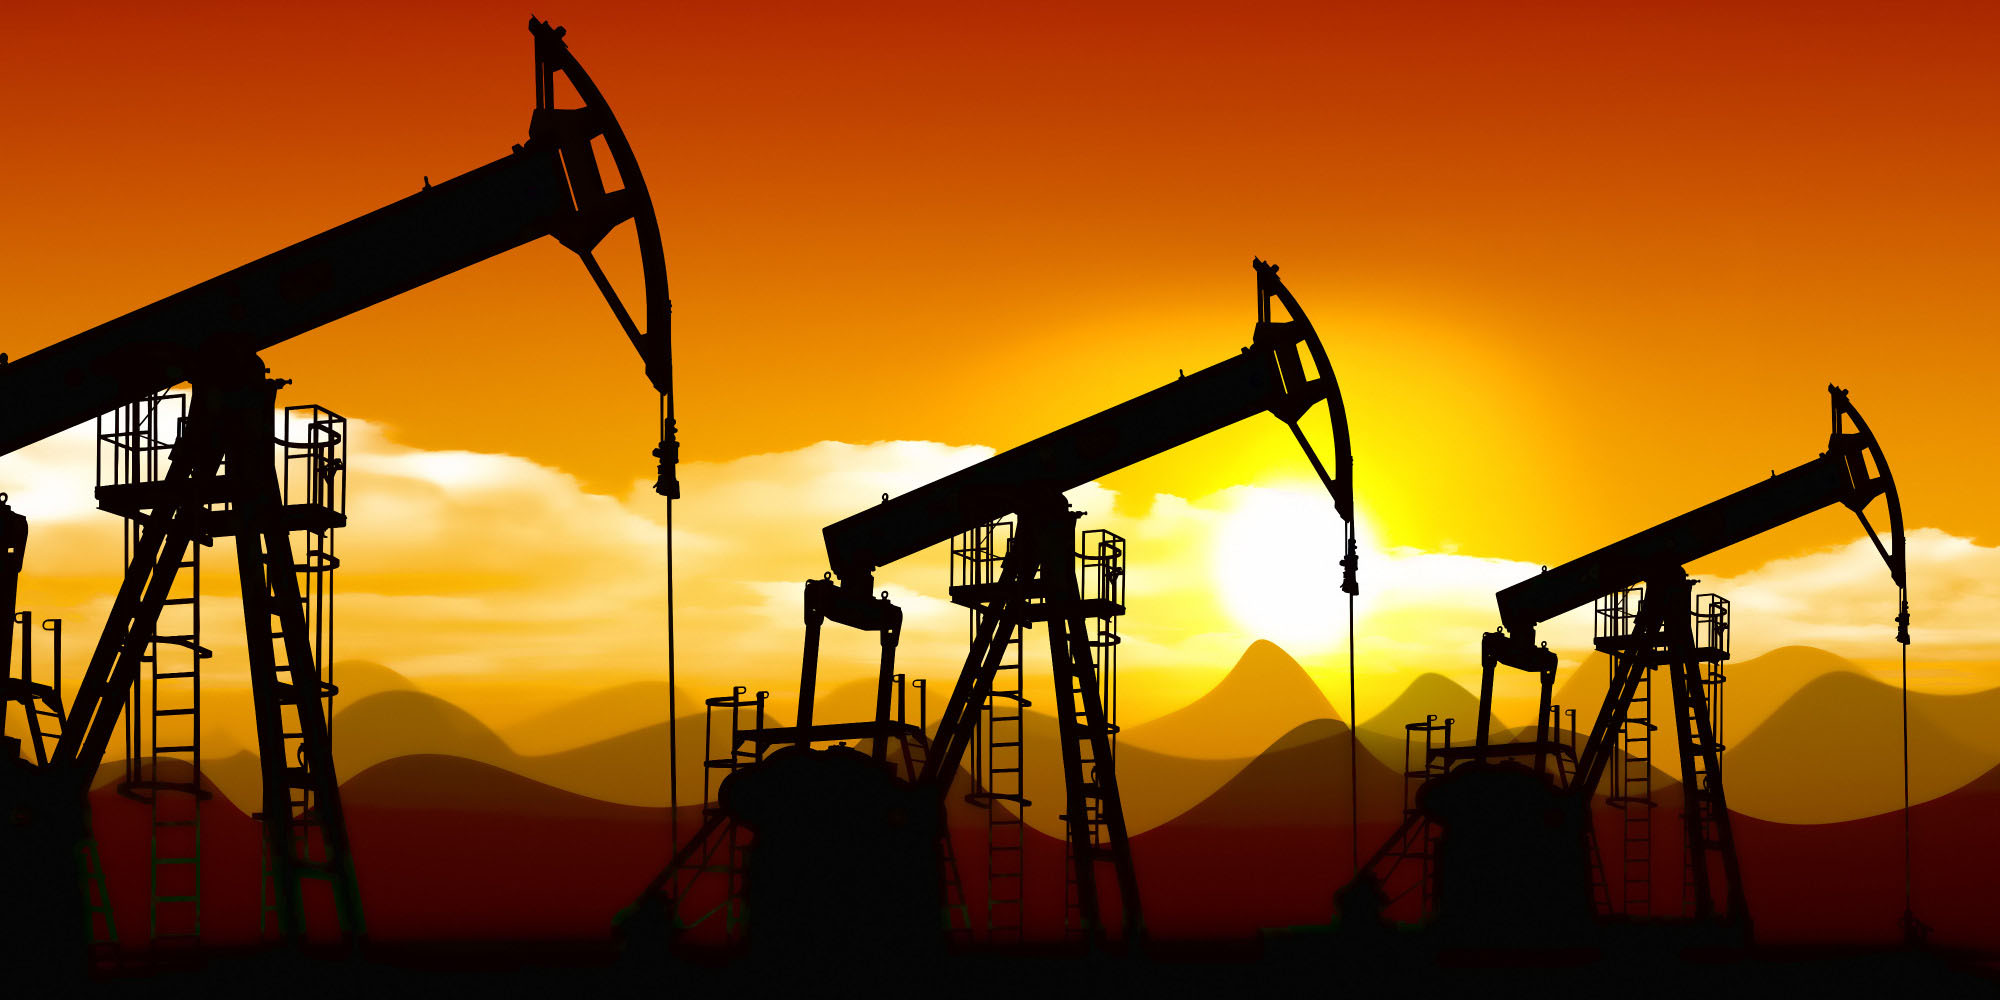 آرامش روند صعودی بازار نفت